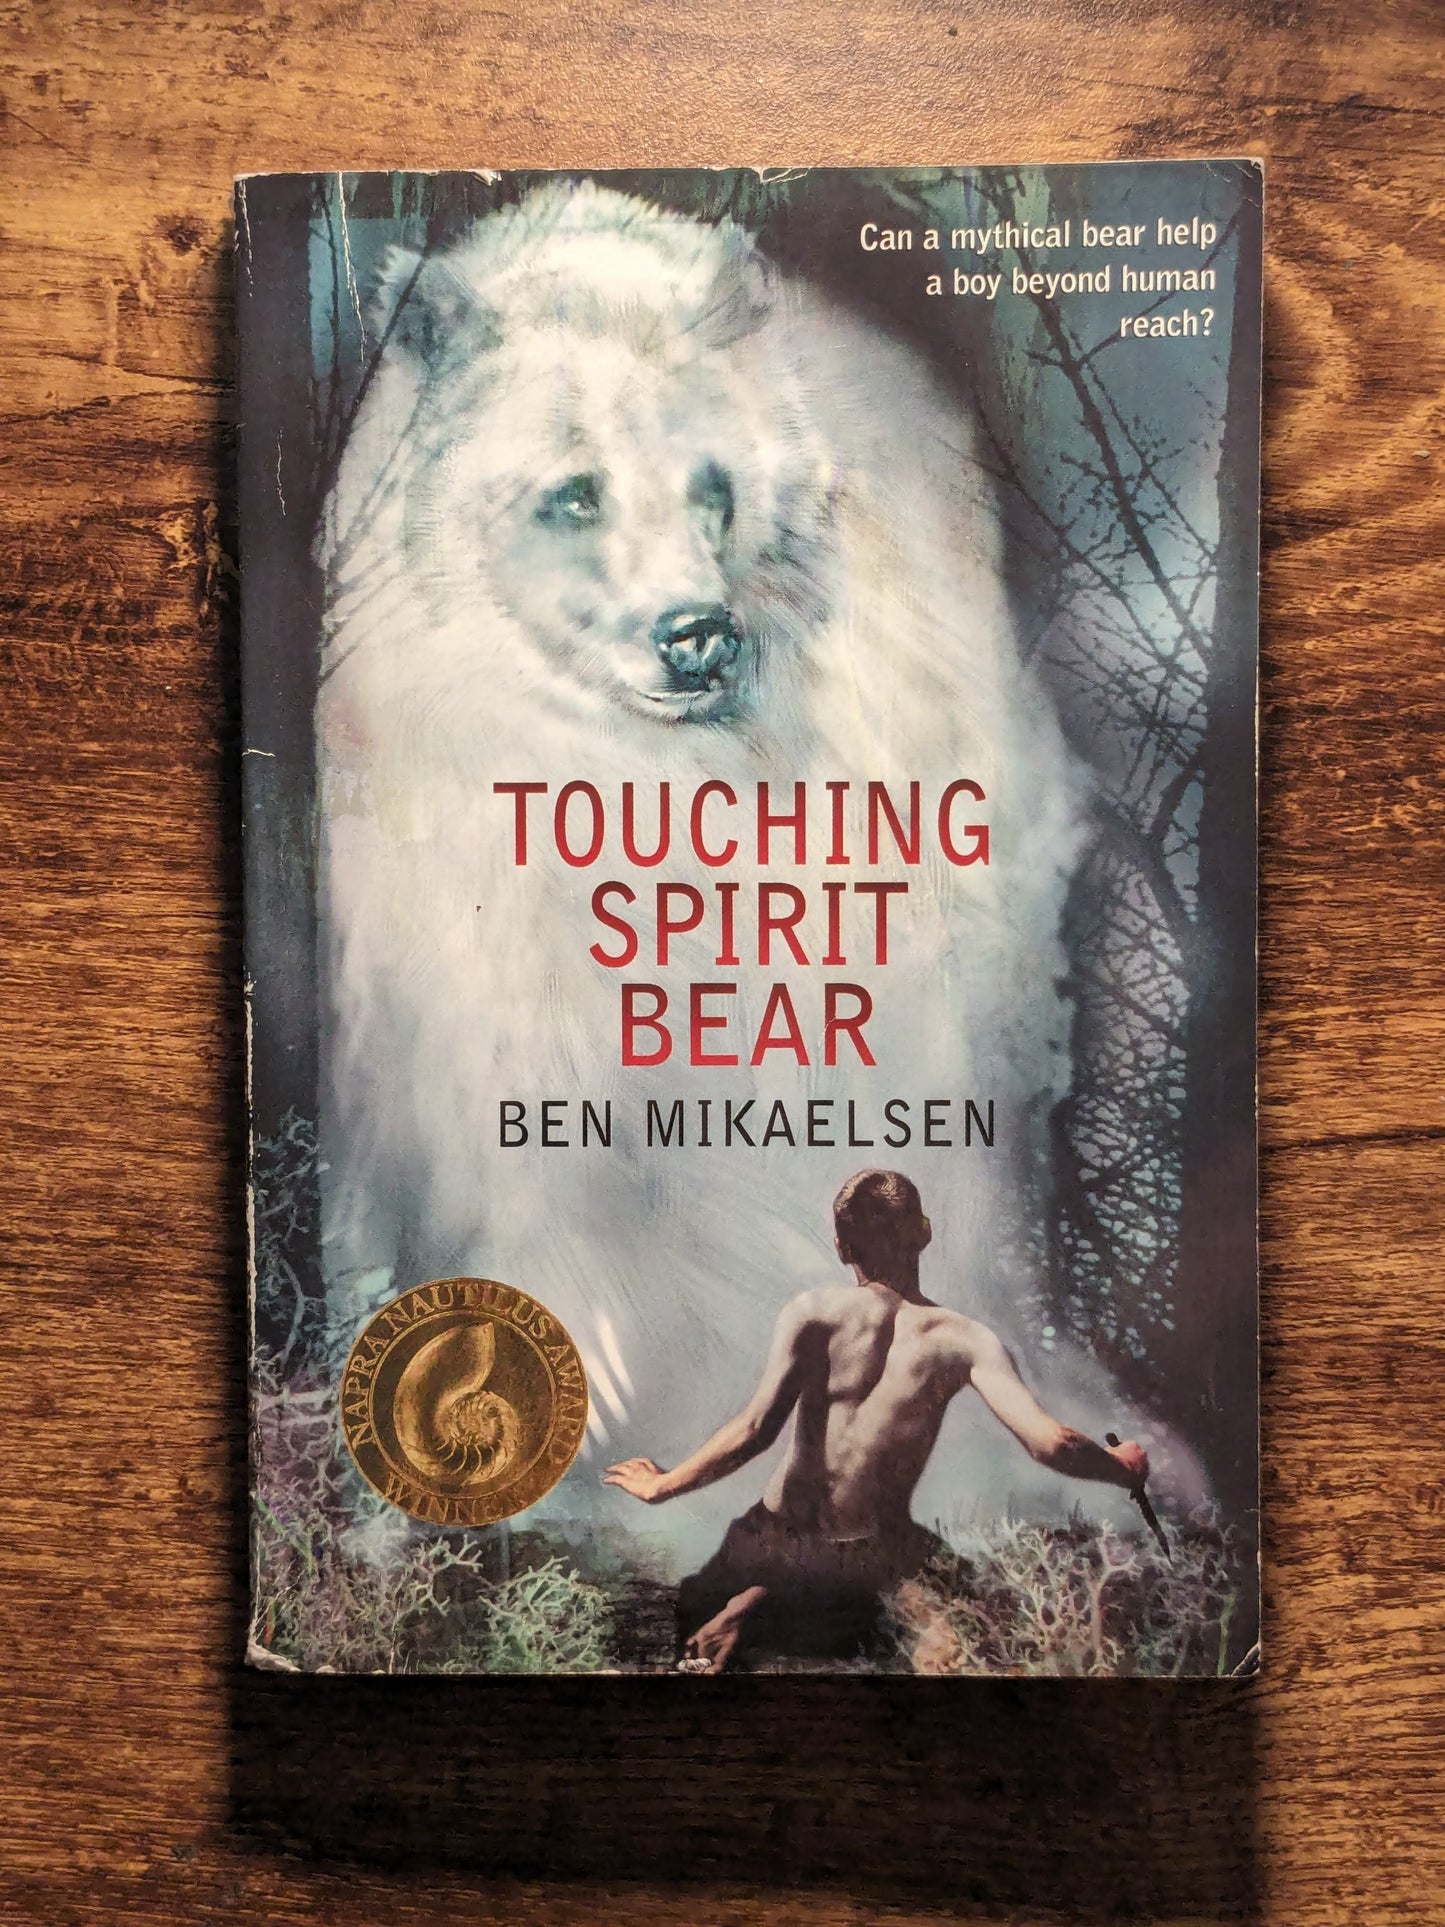 Touching Spirit Bear (Paperback) by Ben Mikaelsen